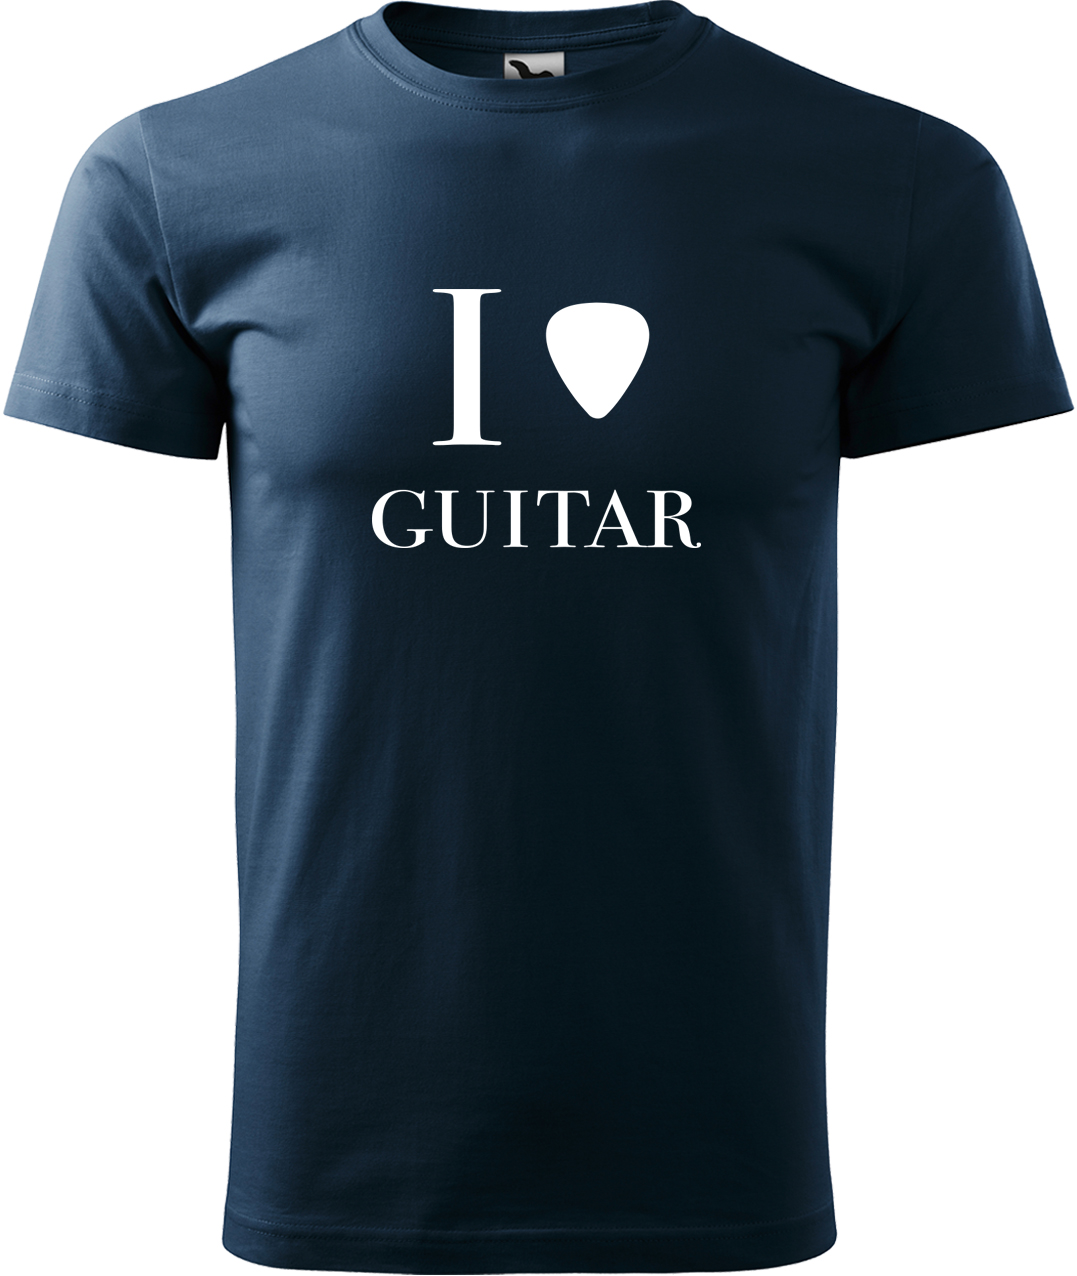 Pánské tričko s kytarou - I love guitar Velikost: XL, Barva: Námořní modrá (02), Střih: pánský